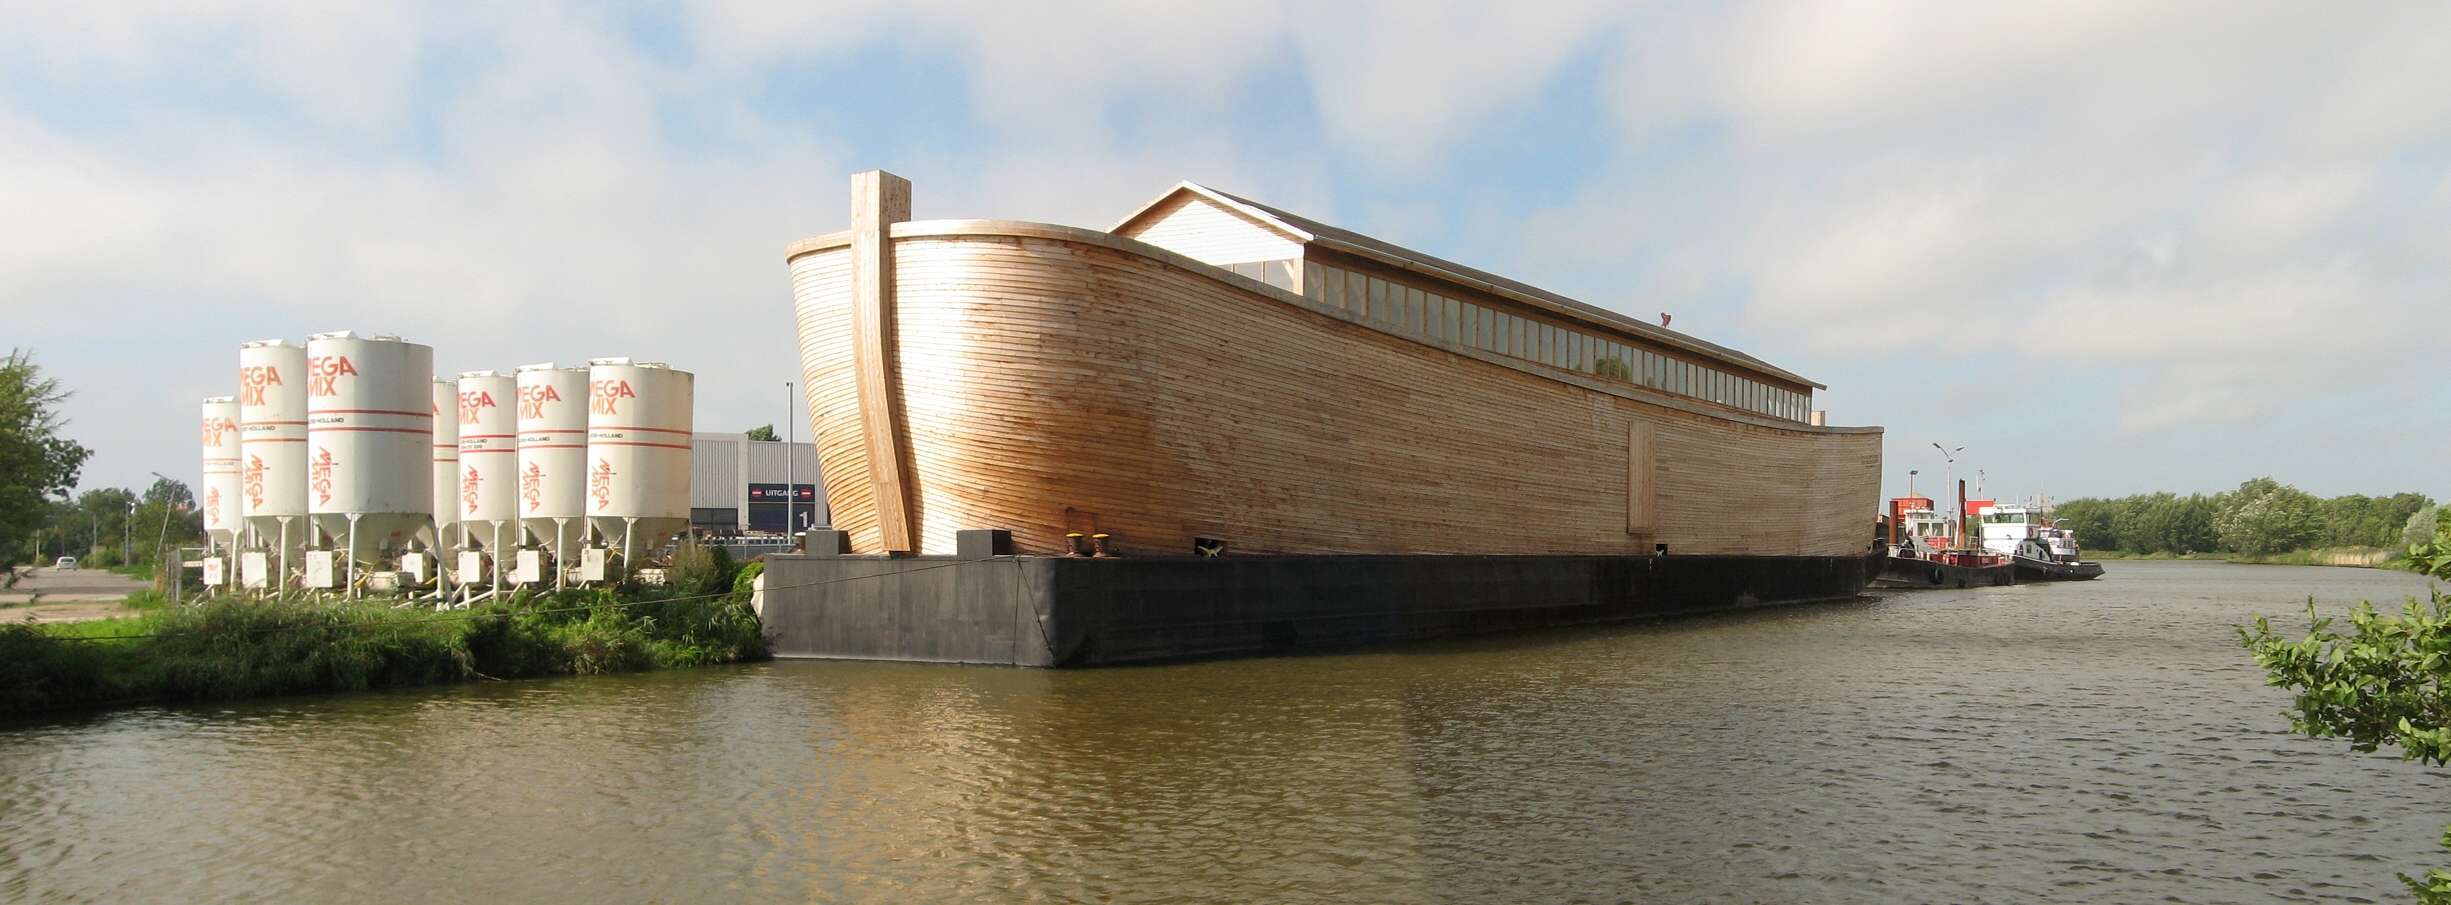 Из какого дерева был построен Ноев ковчег?